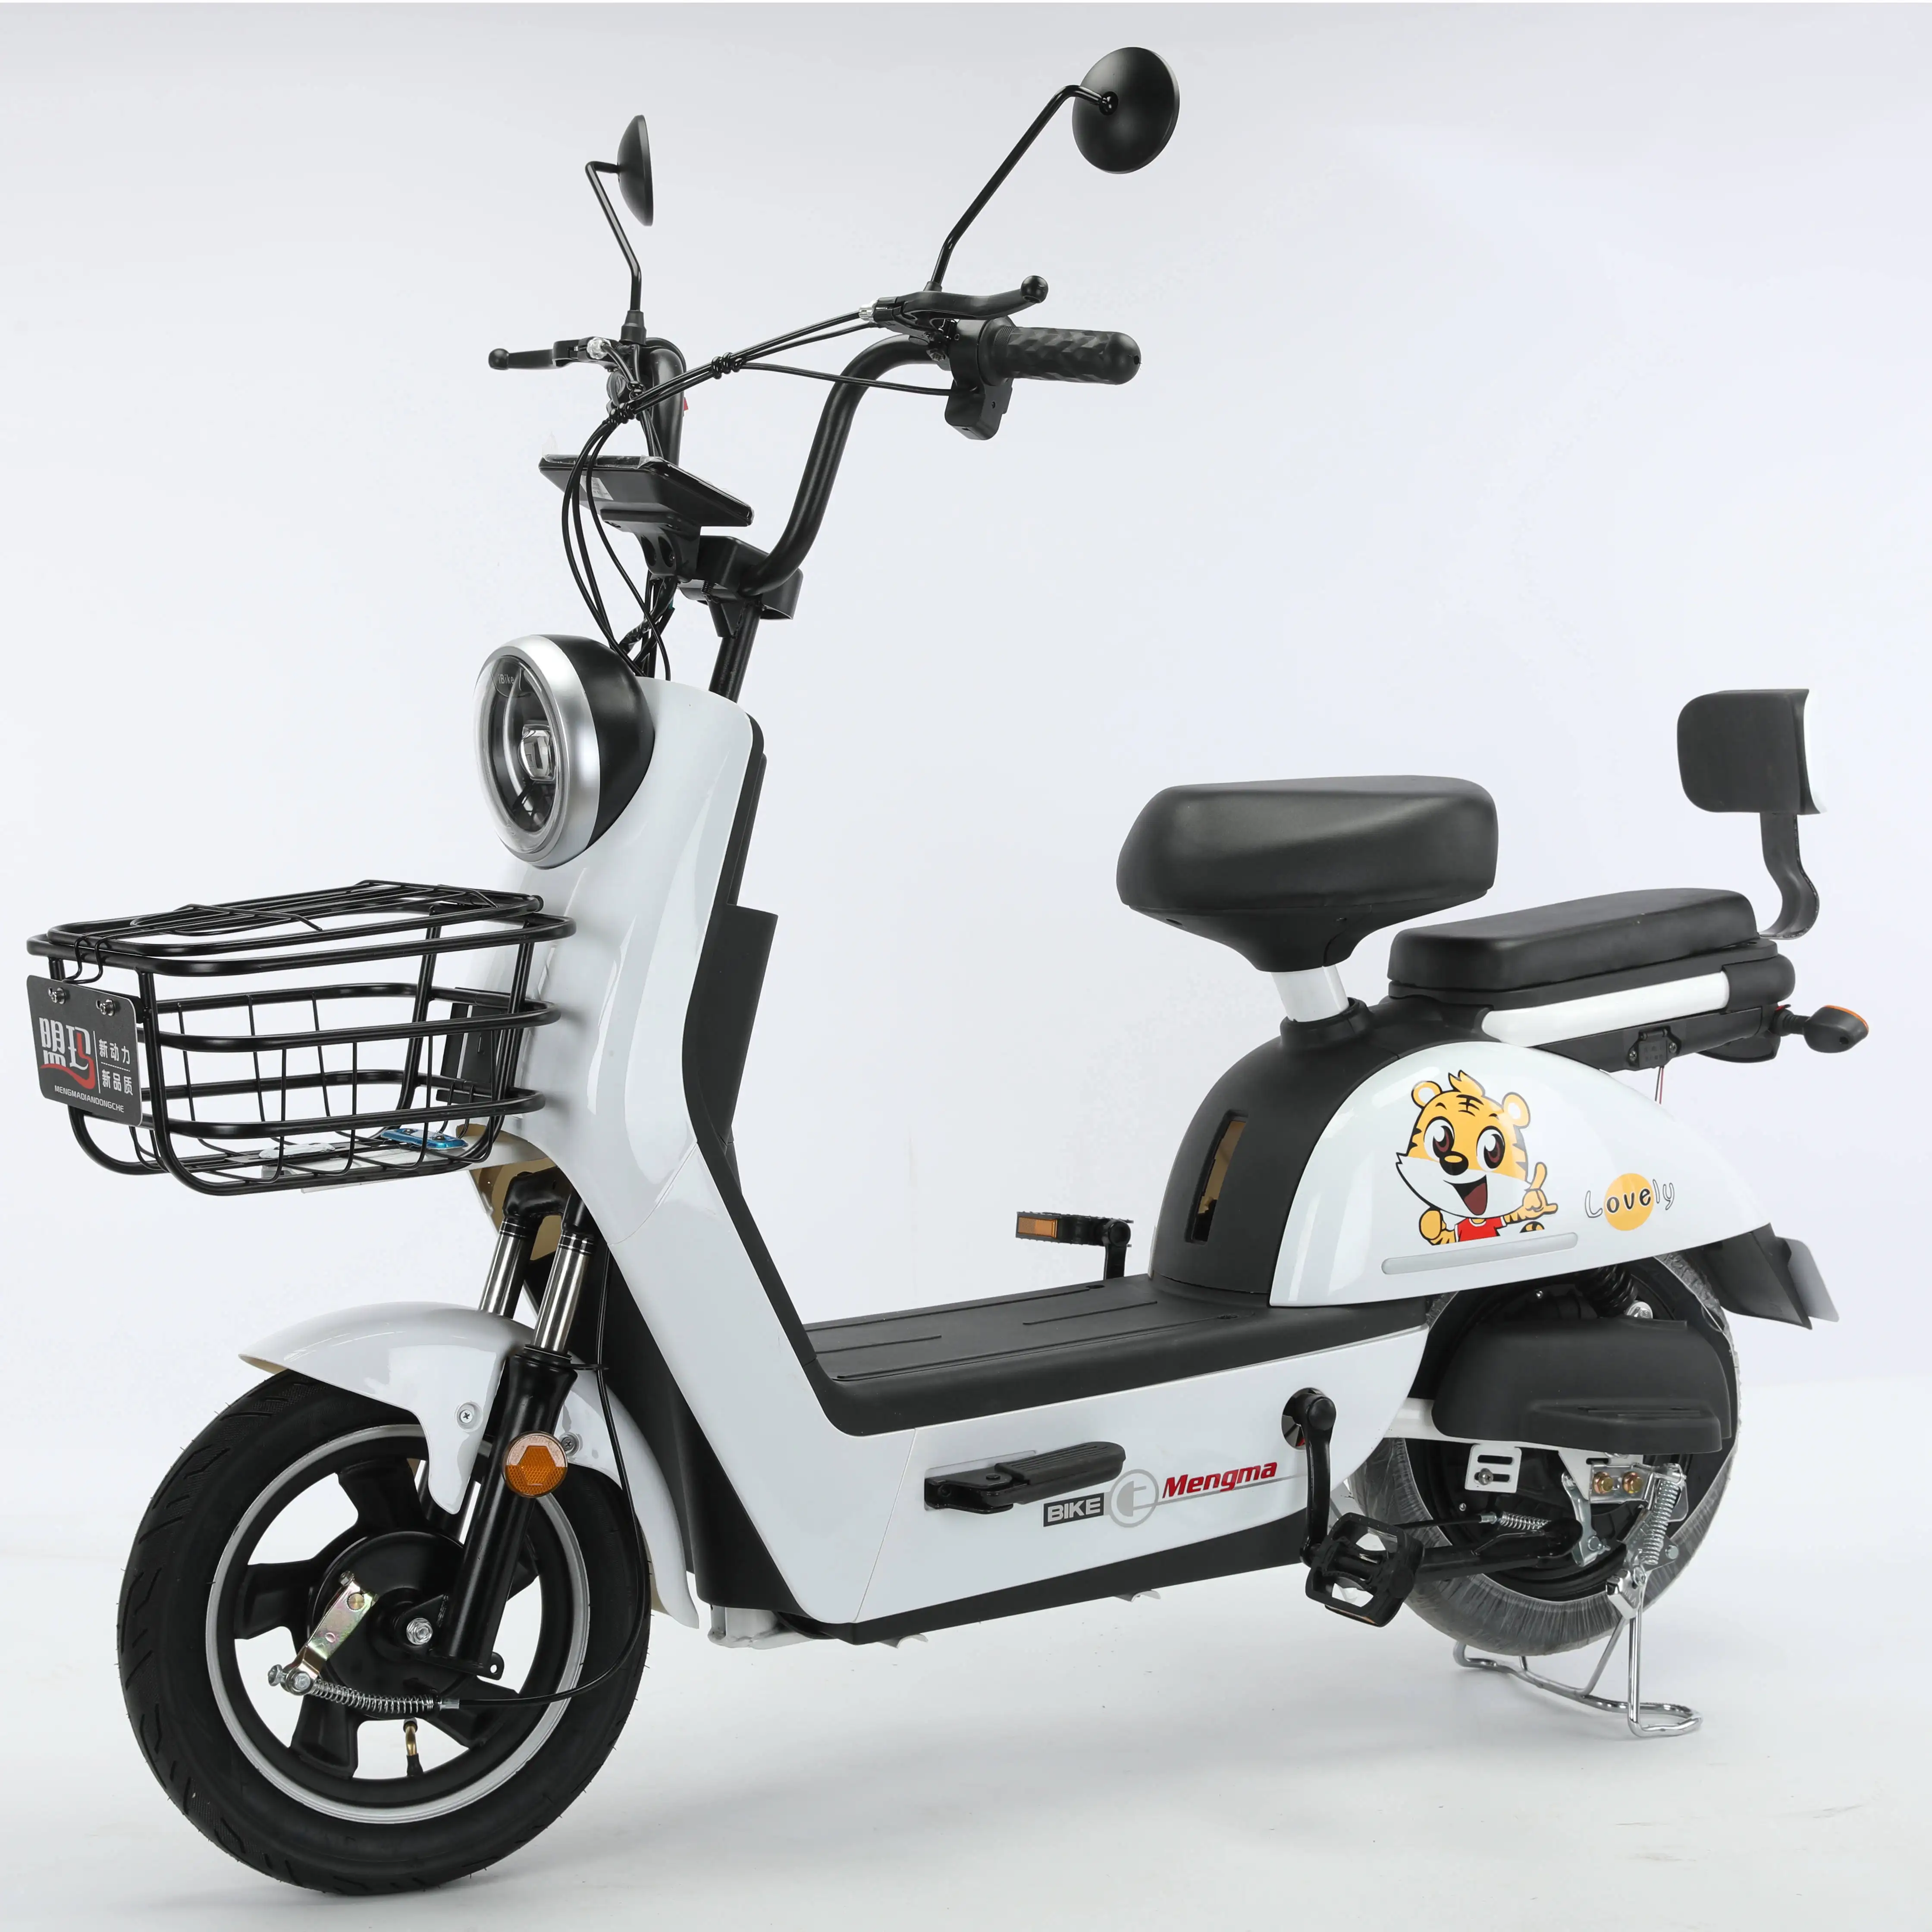 Neumático gordo precio bajo motor dual triciclos eléctricos 3 ruedas bicicleta eléctrica de carga